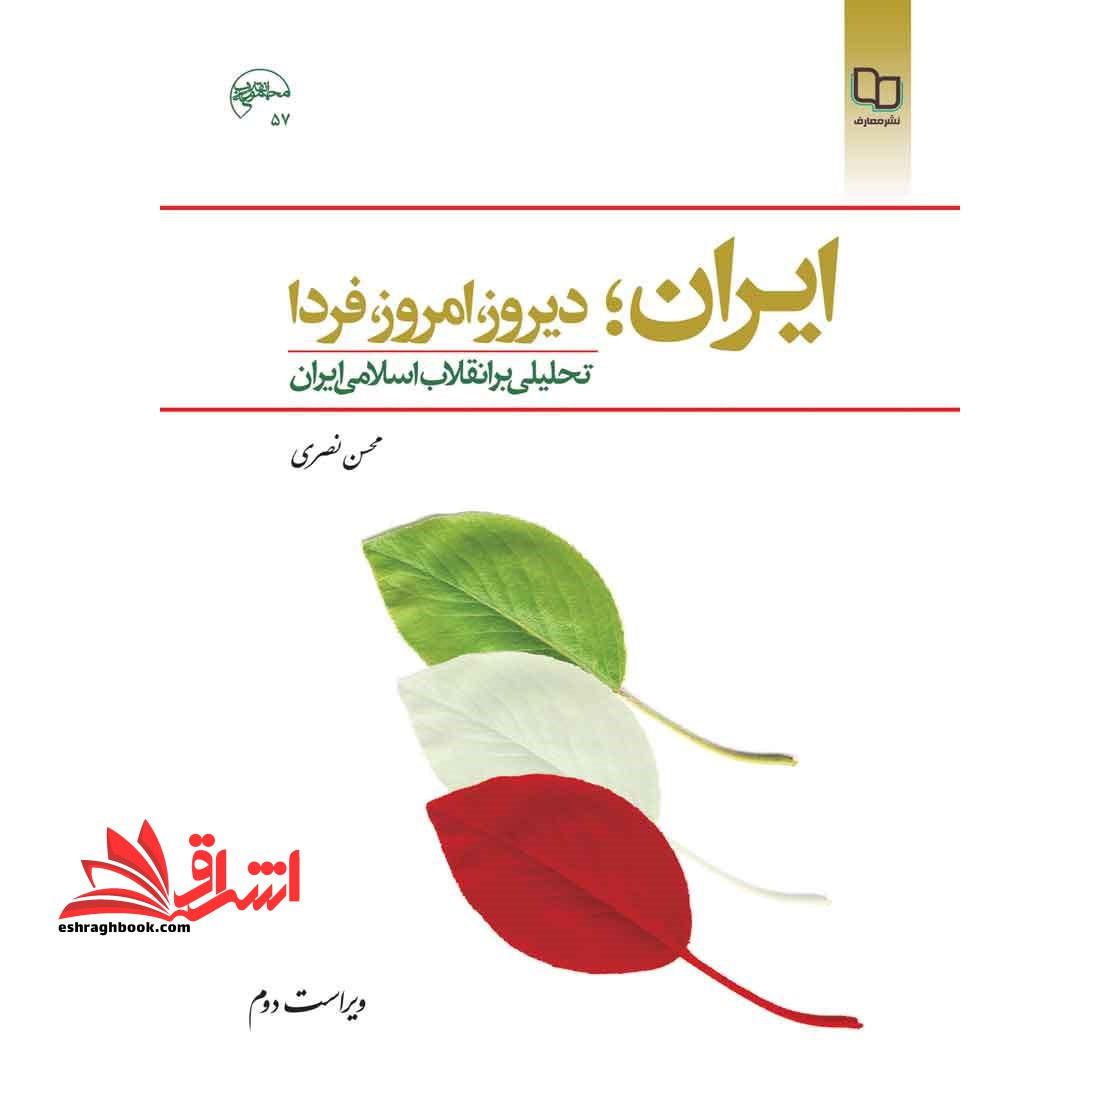 ایران , دیروز , امروز,  فردا تحلیلی بر انقلاب اسلامی ایران